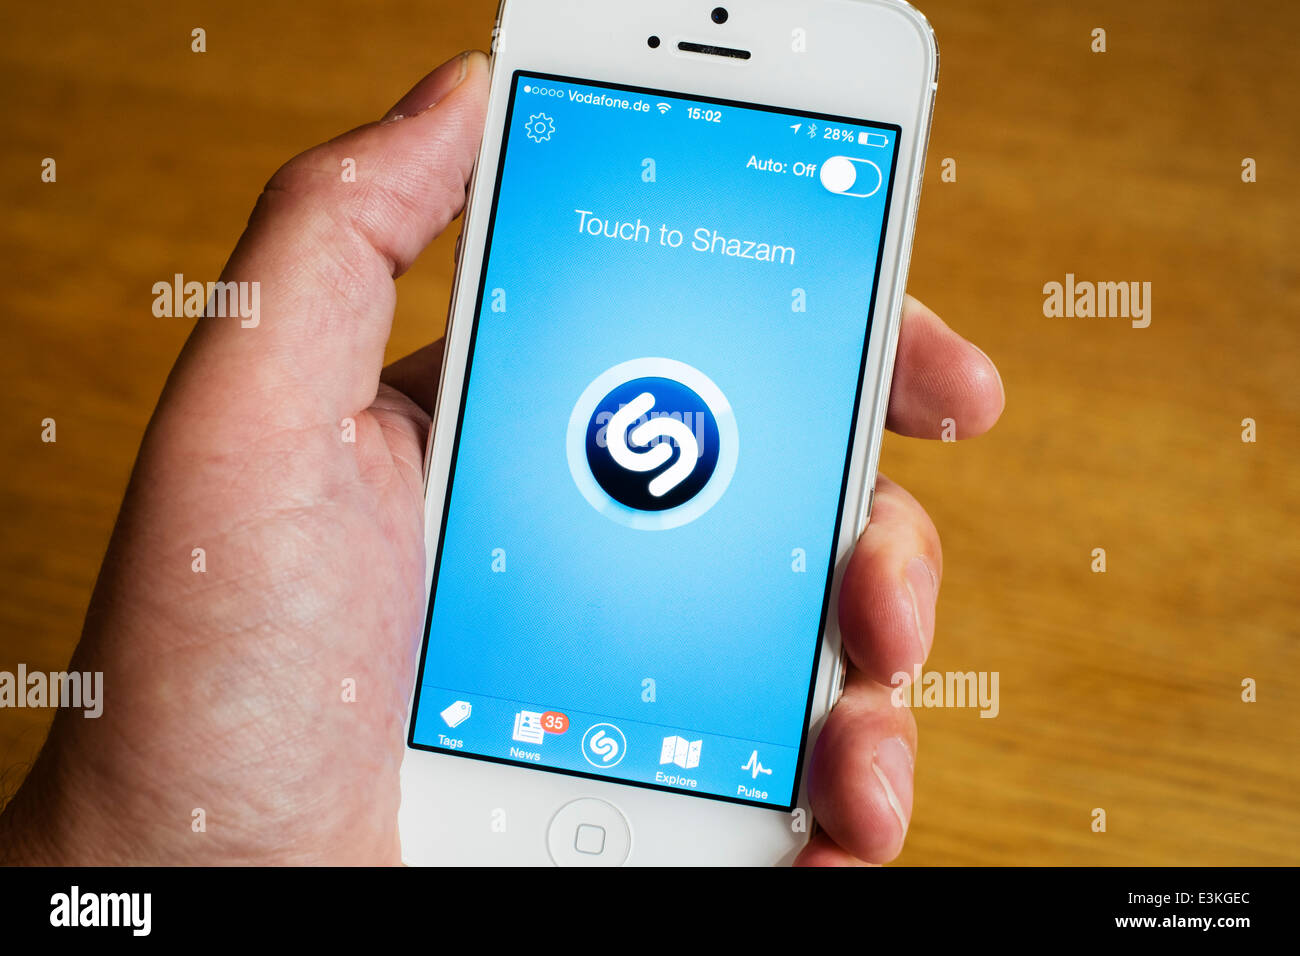 Dettaglio della home page di Shazam riconoscimento musicale online mobile app su iPhone smart phone Foto Stock